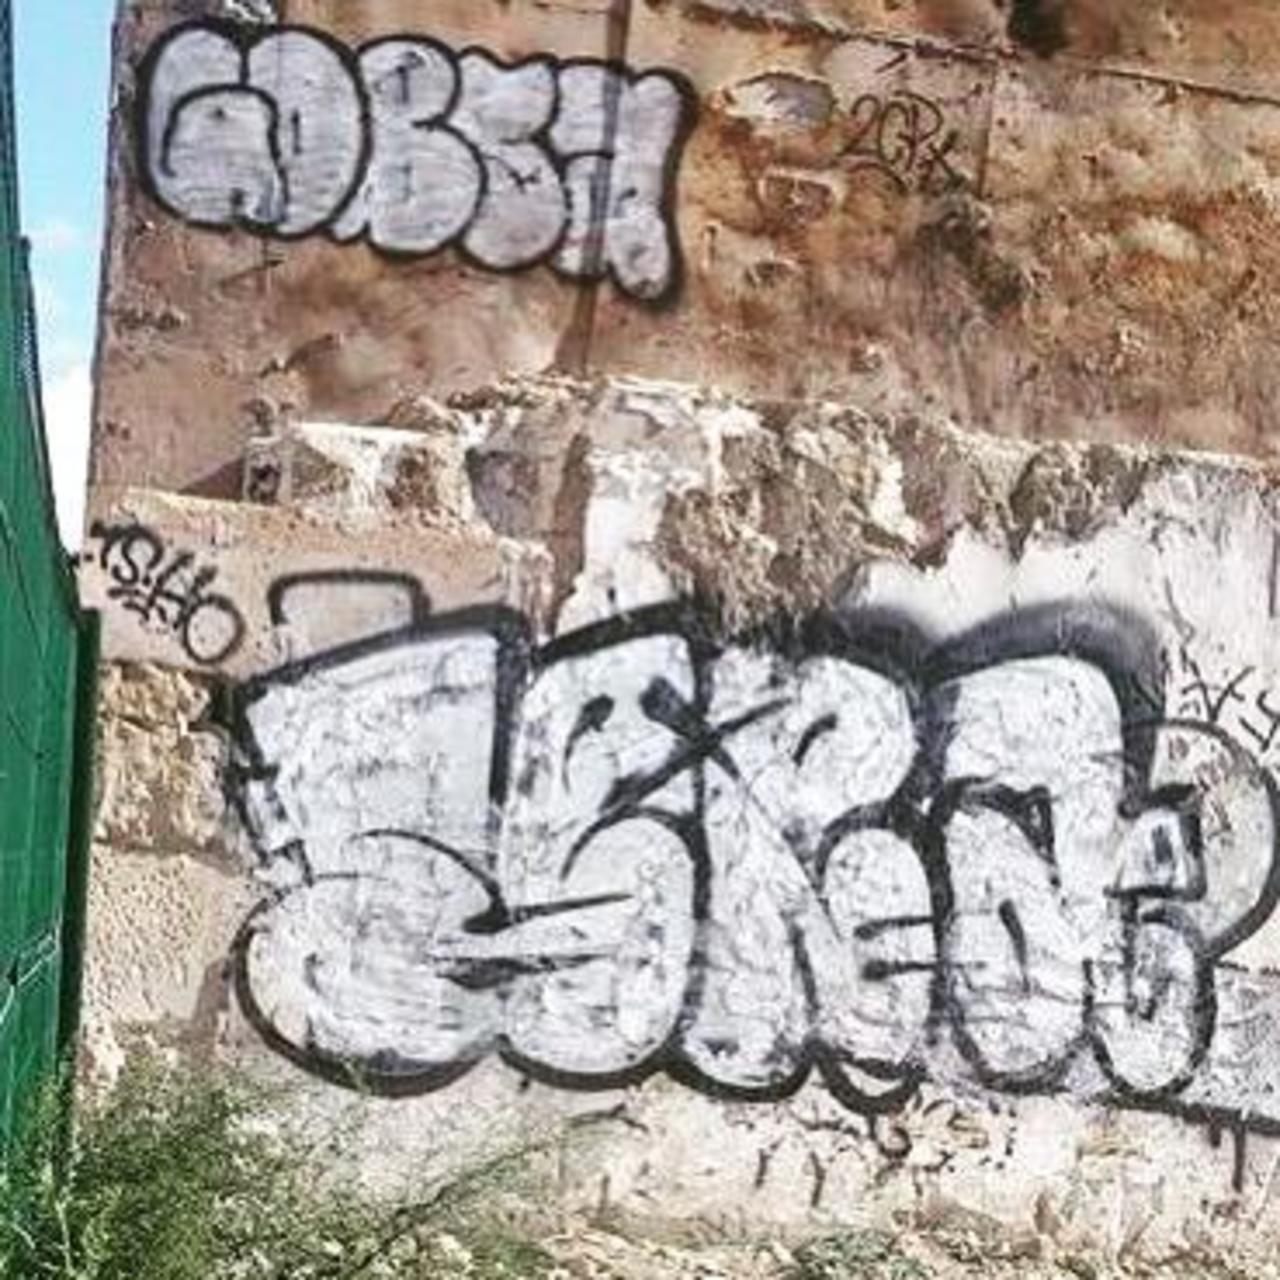 RT @artpushr: via #pa.sera.ap "http://bit.ly/1OlAS1J" #graffiti #streetart http://t.co/GCXqgoseVV